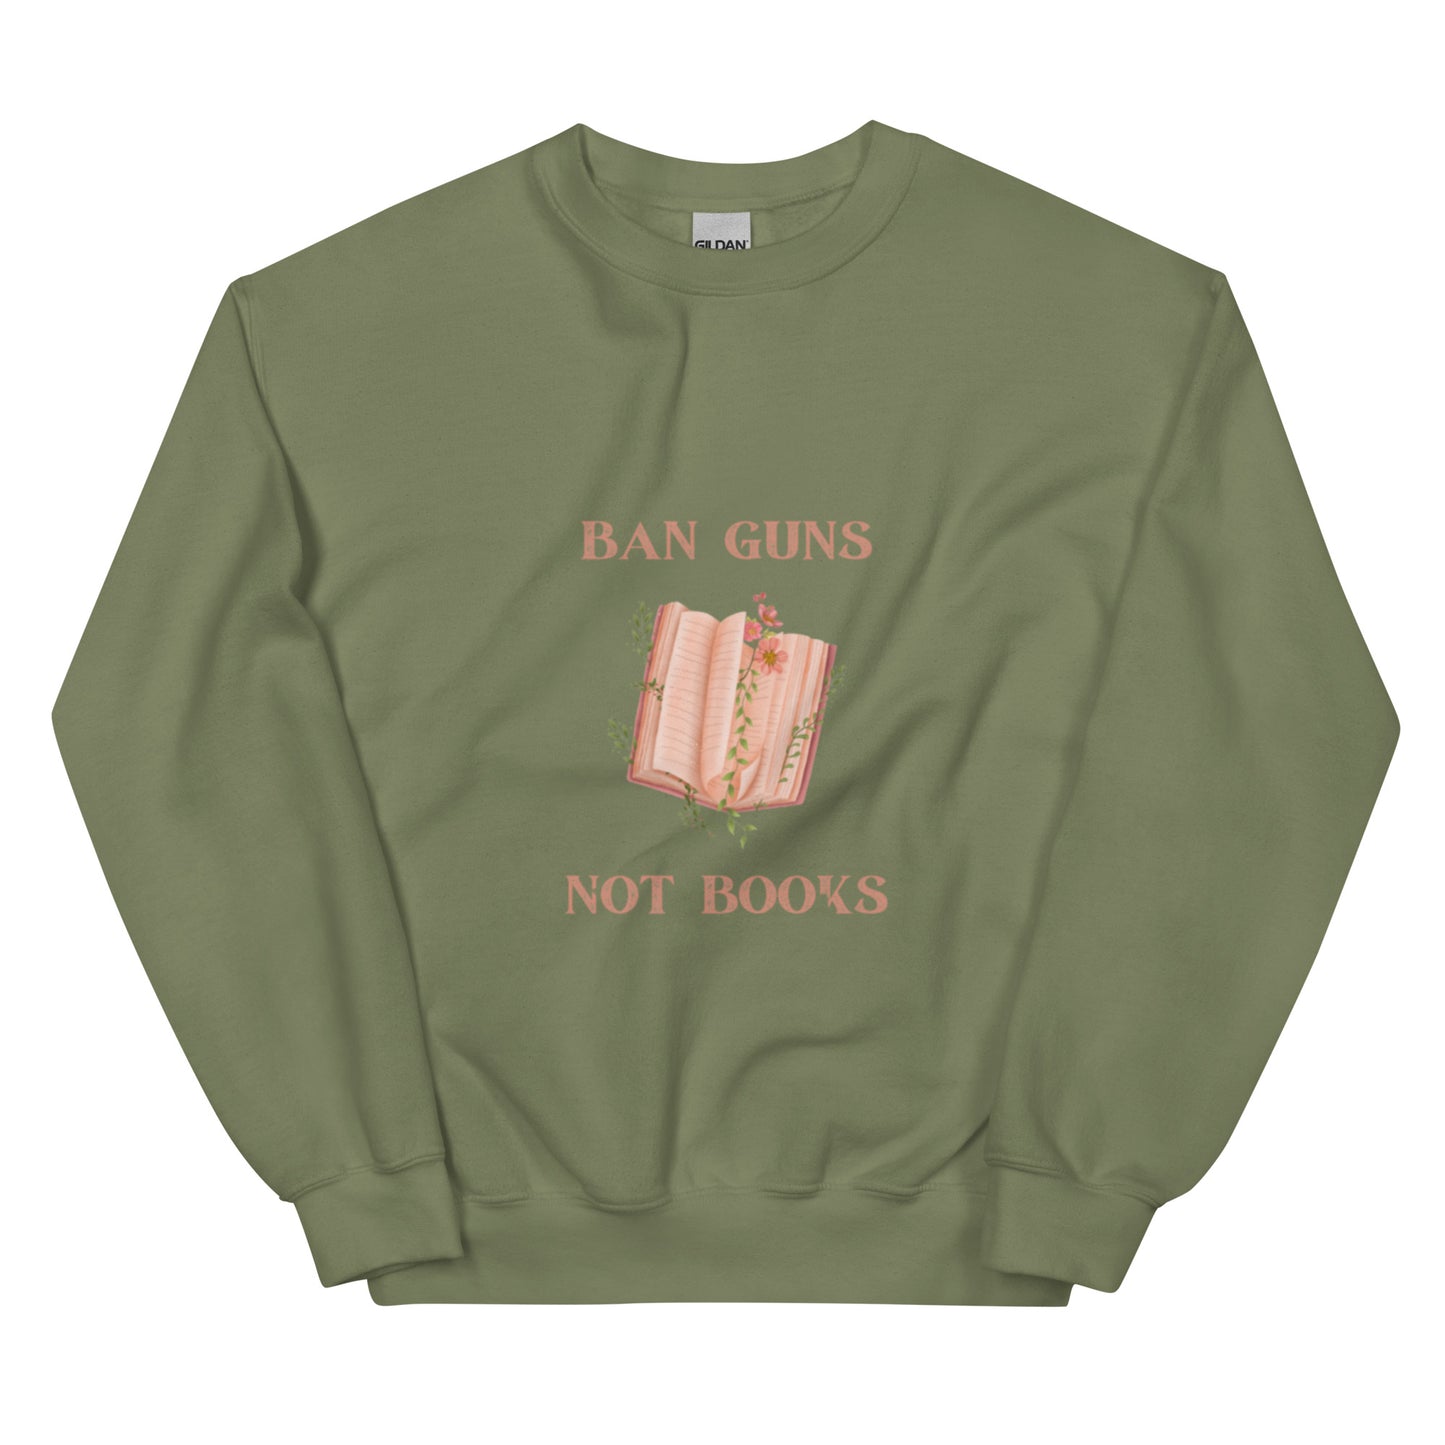 Ban Guns Not Books Unisex Sweatshirt - The Spinster Librarian Shop